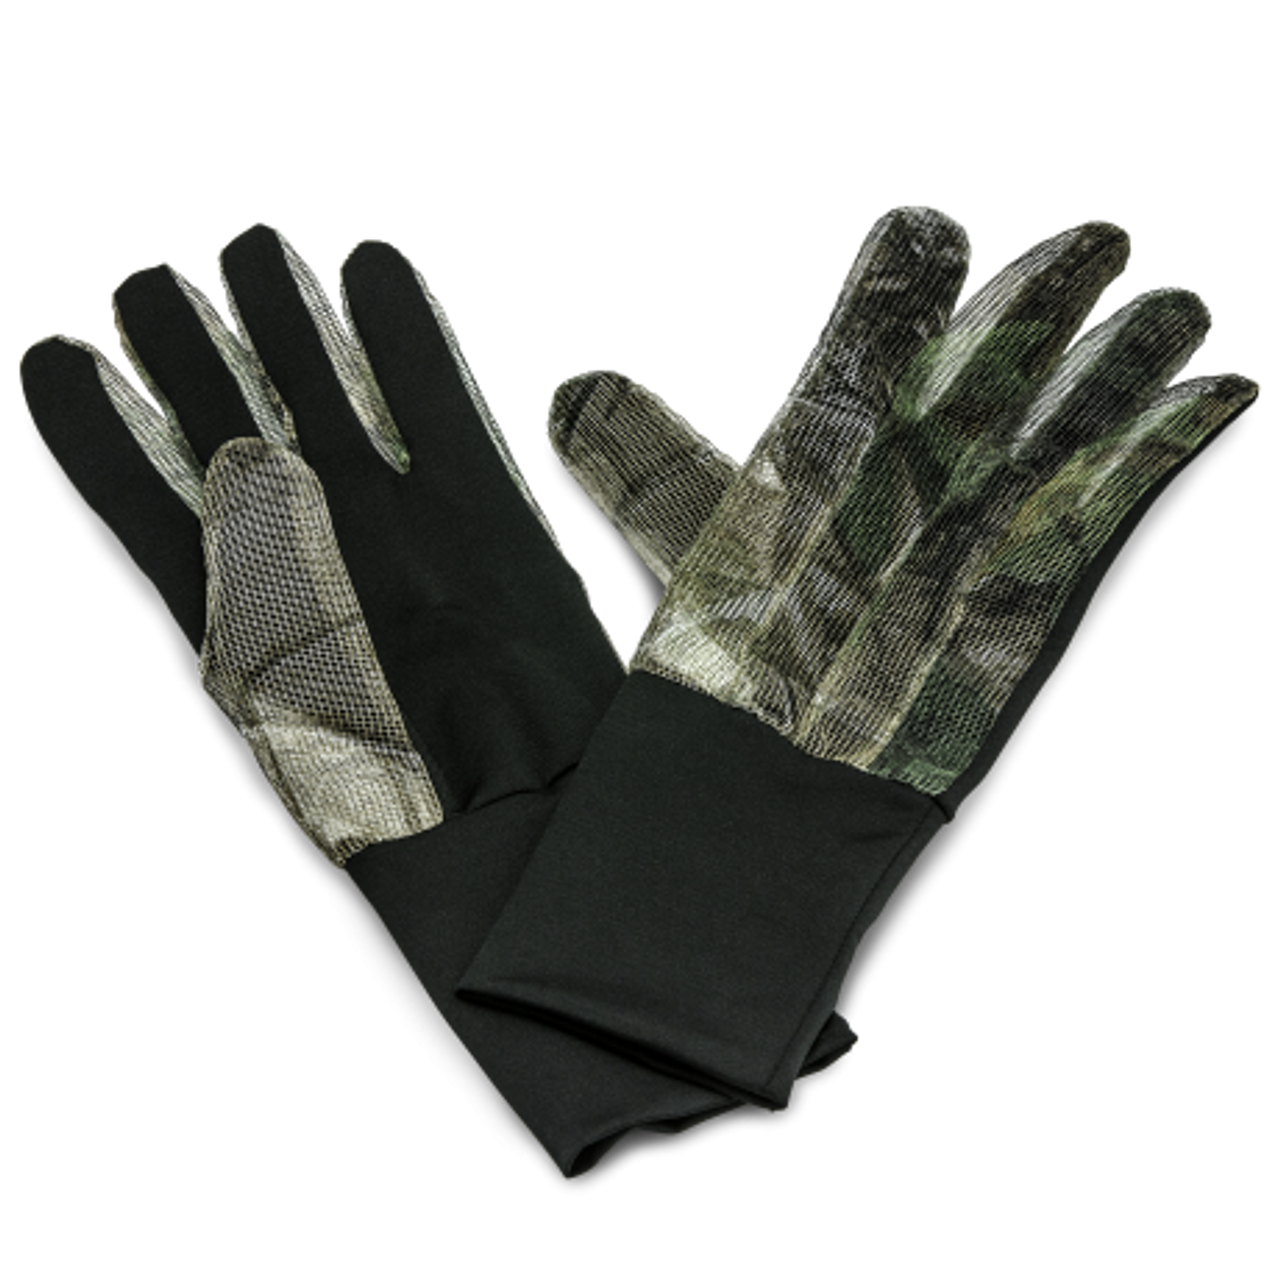 Hunter’s Specialties Net Gloves Realtree Edge Camo